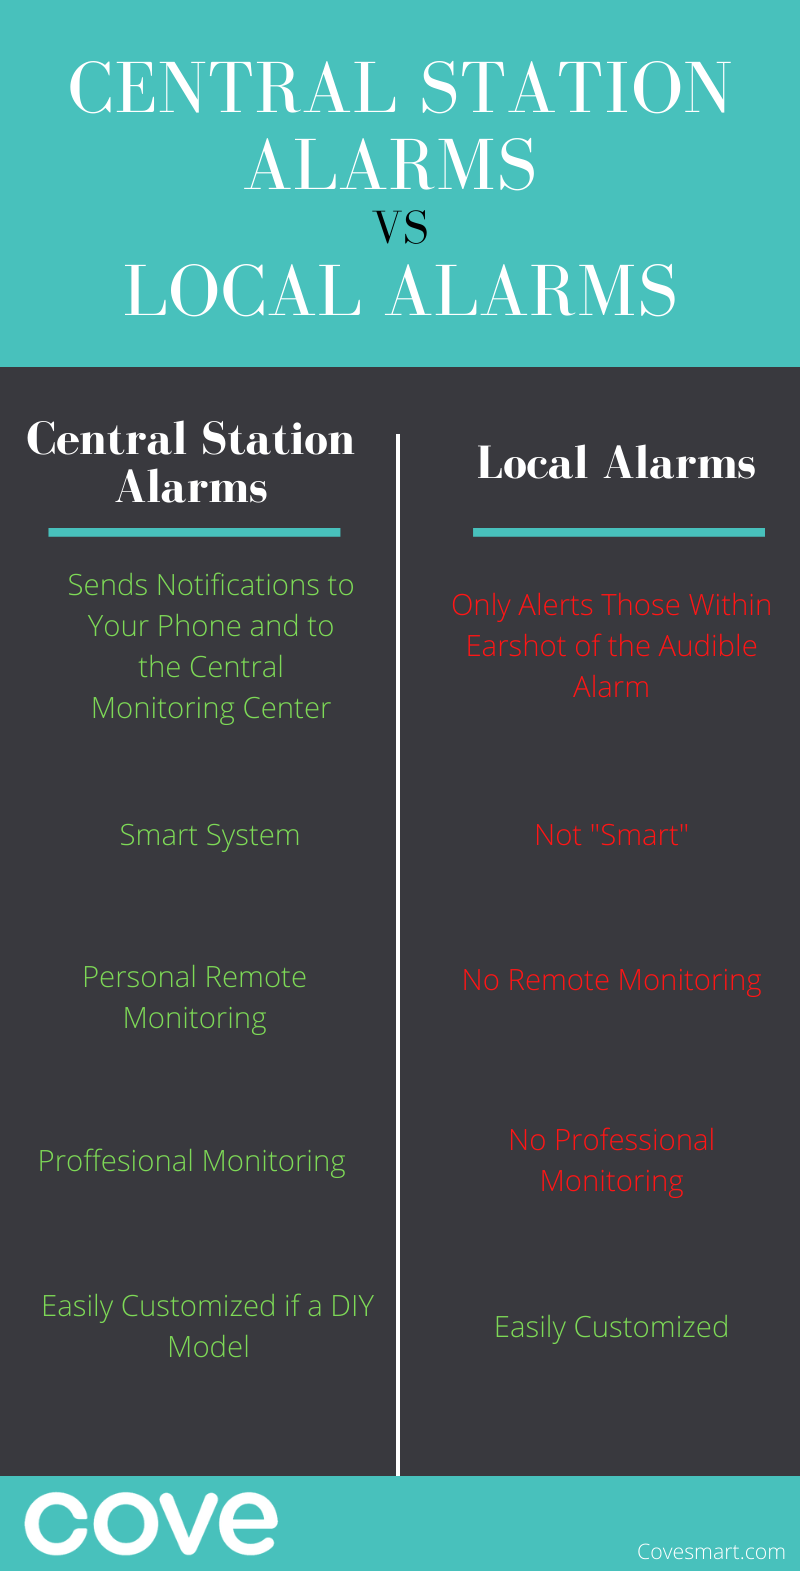 Central Station Alarms vs Local Alarms Infographic: central station alarms are superior to local alarms.